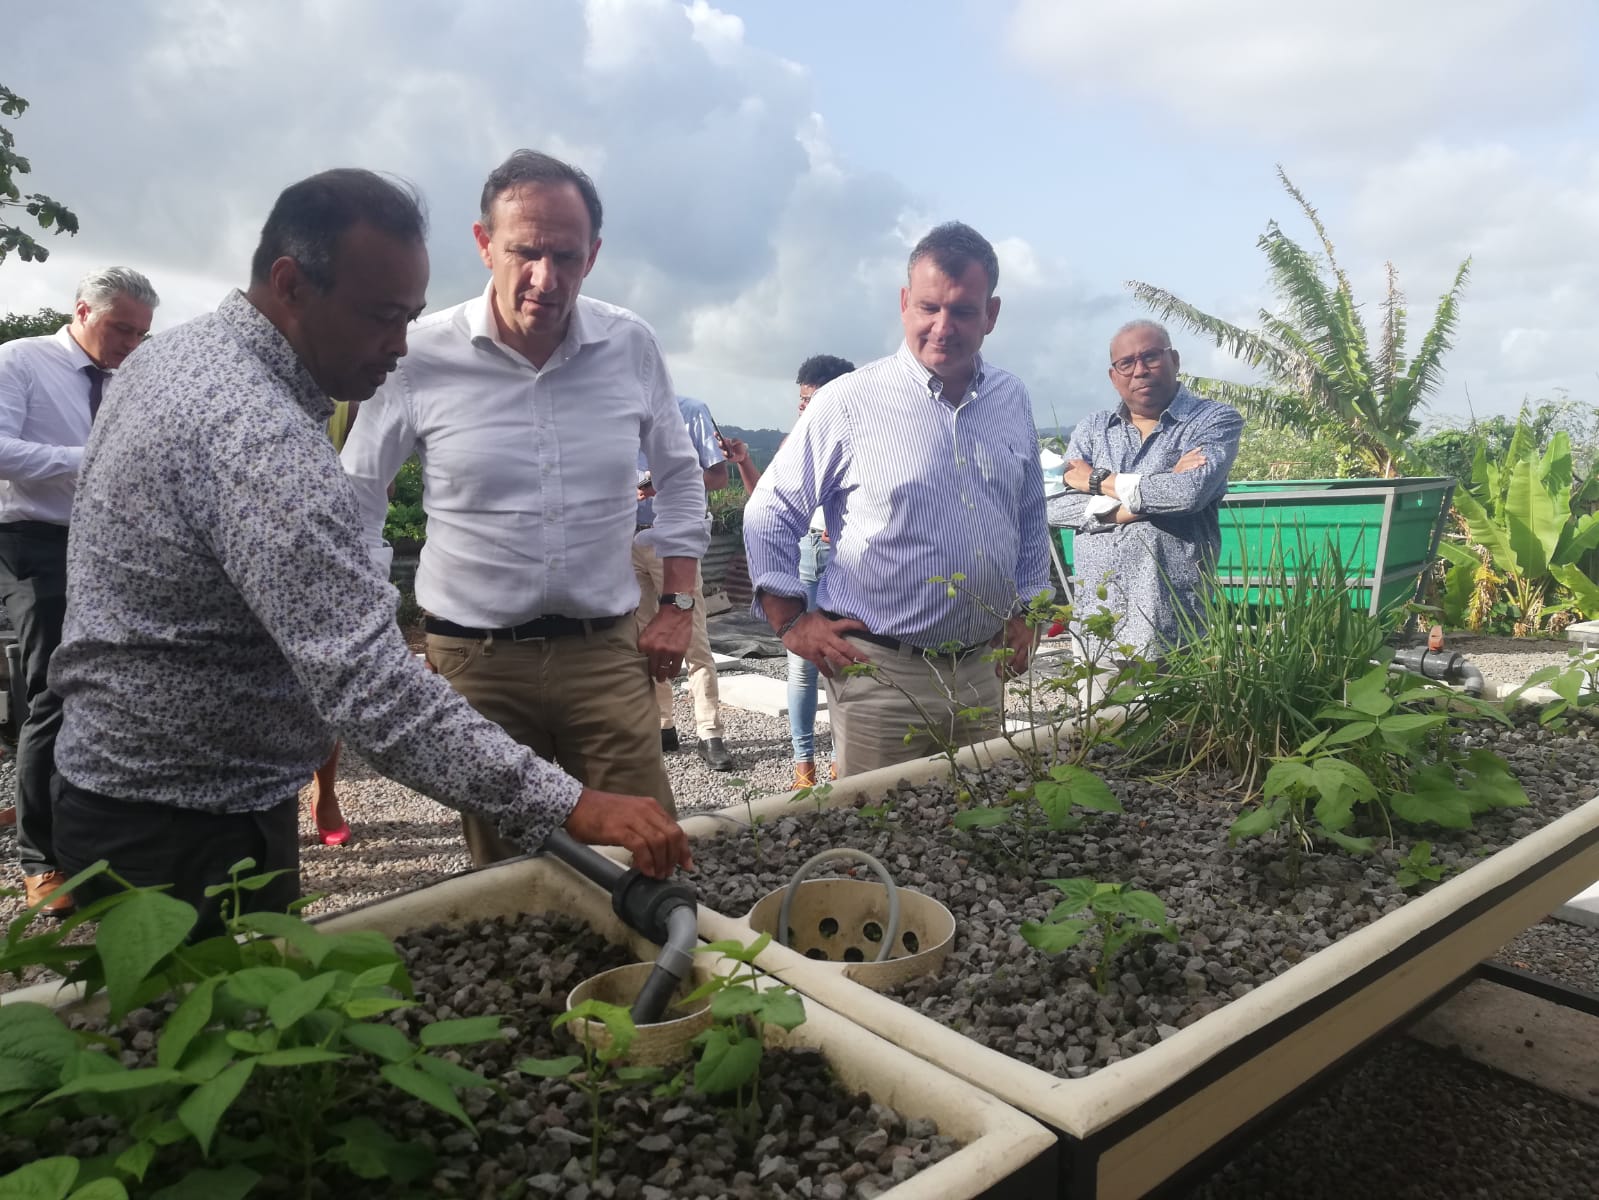     Aquaponie : une alternative pour l'agriculture en Martinique ? 

